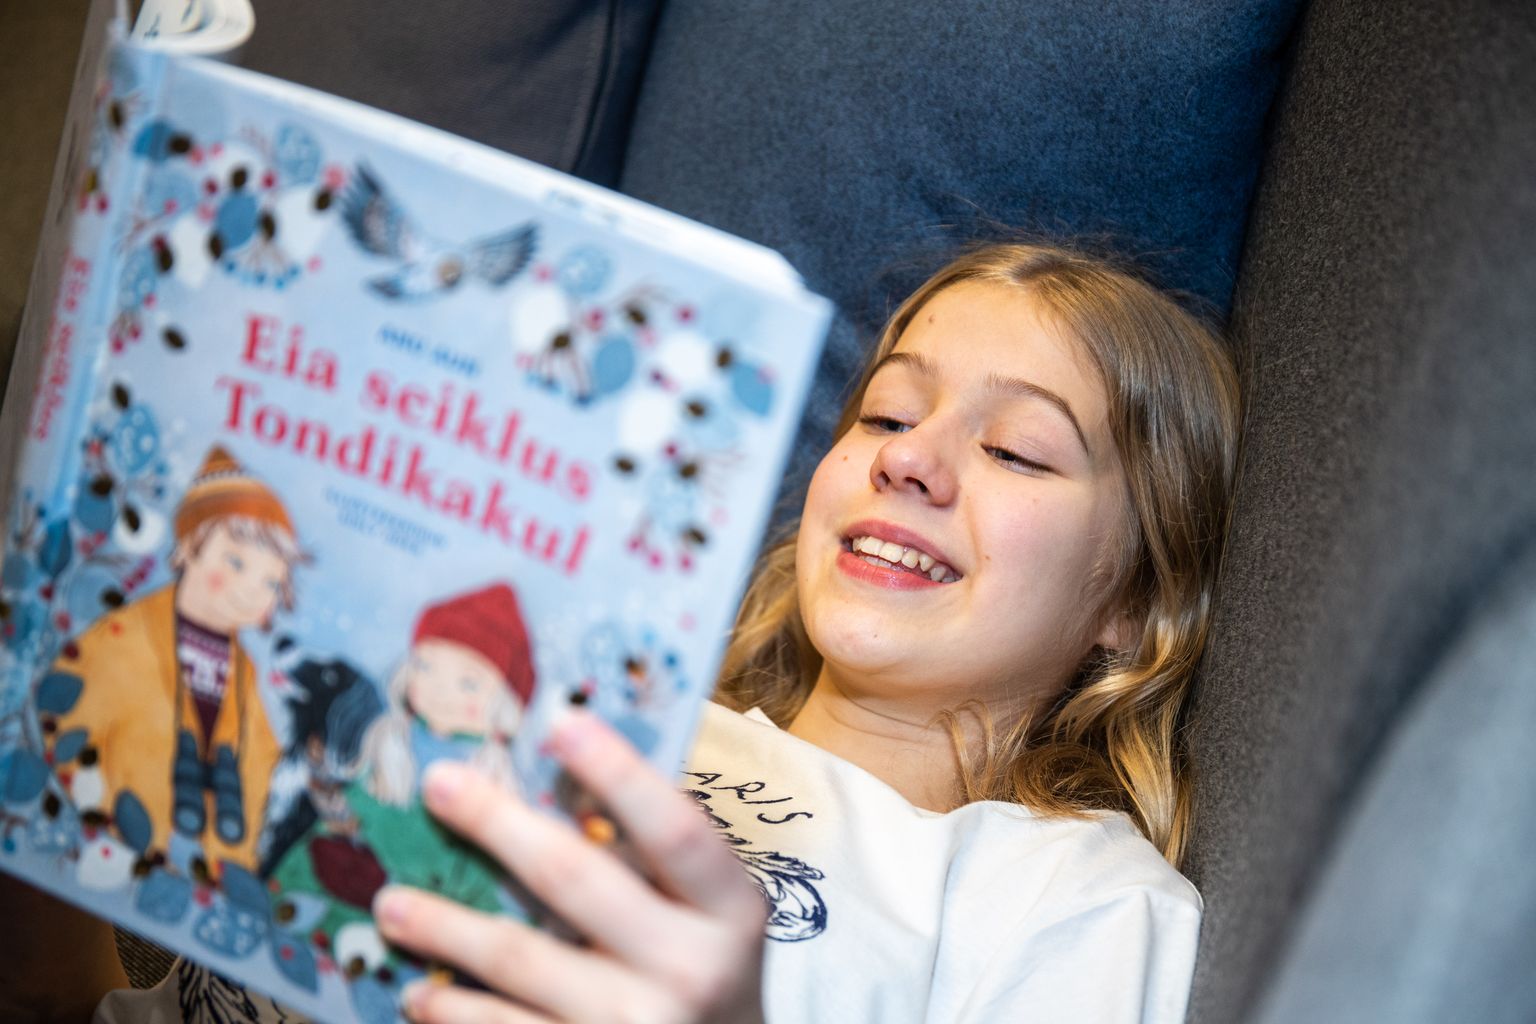 Paula Rits, "Eia jõulud tondikakul" osatäitja loeb raamatut "Eia seiklus Tondikakul".